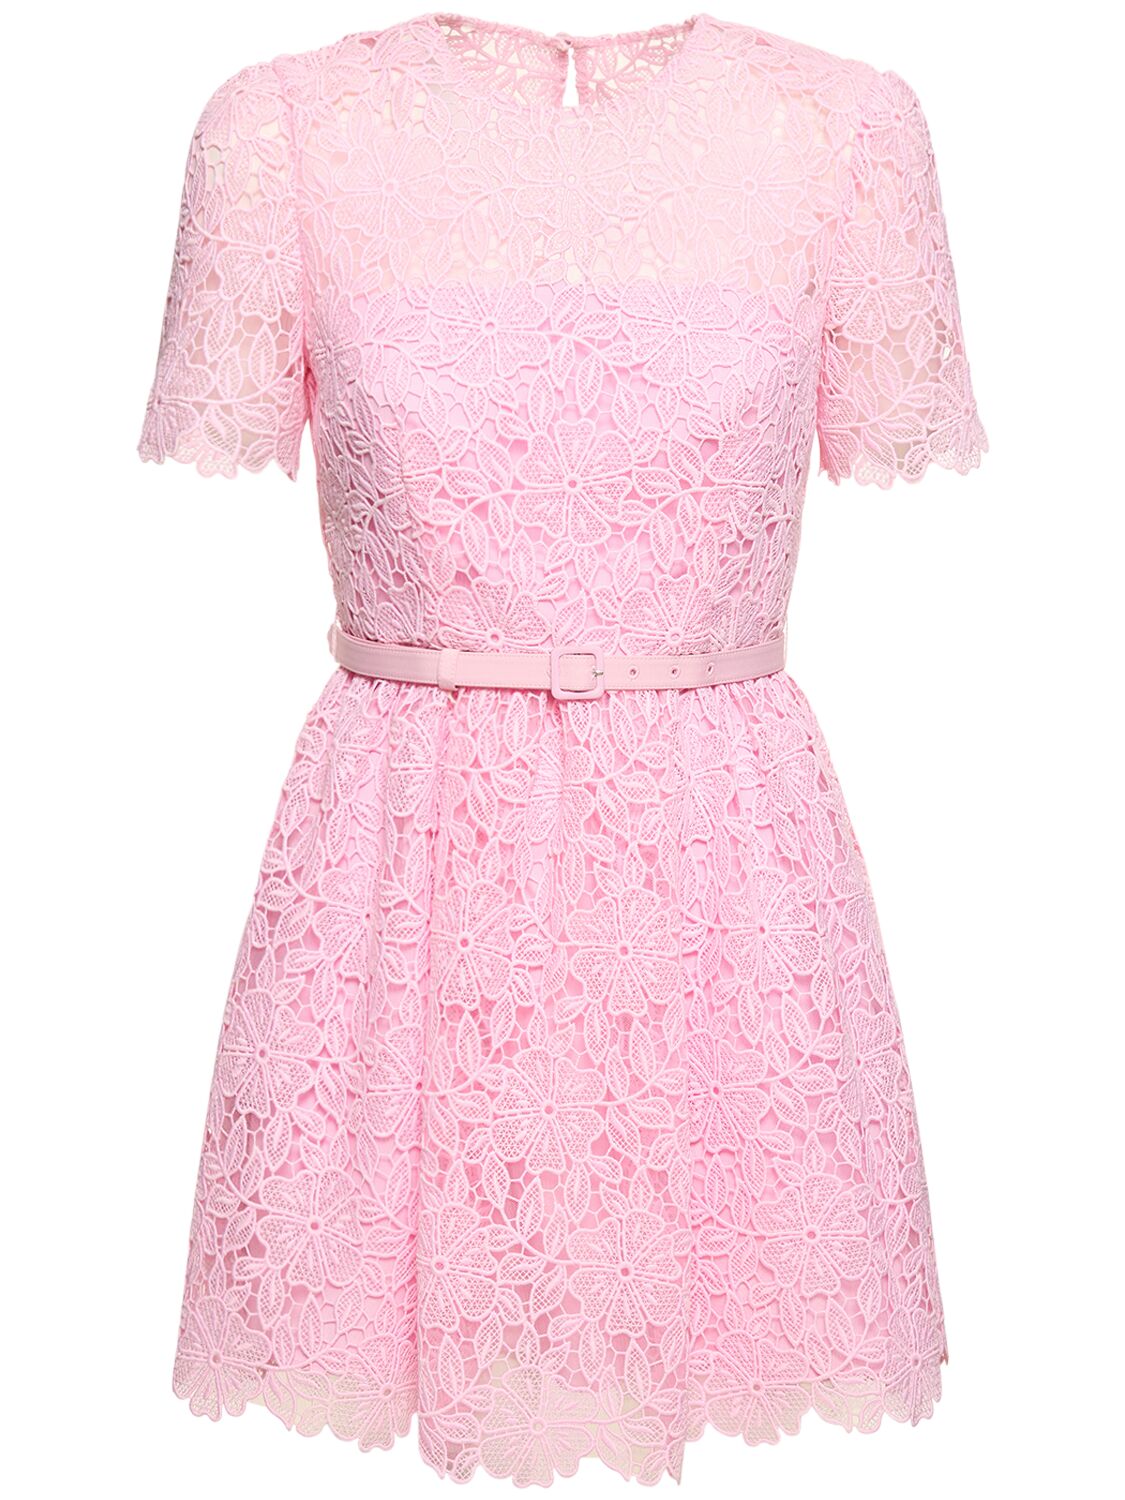 Image of Short Sleeve Lace Mini Dress